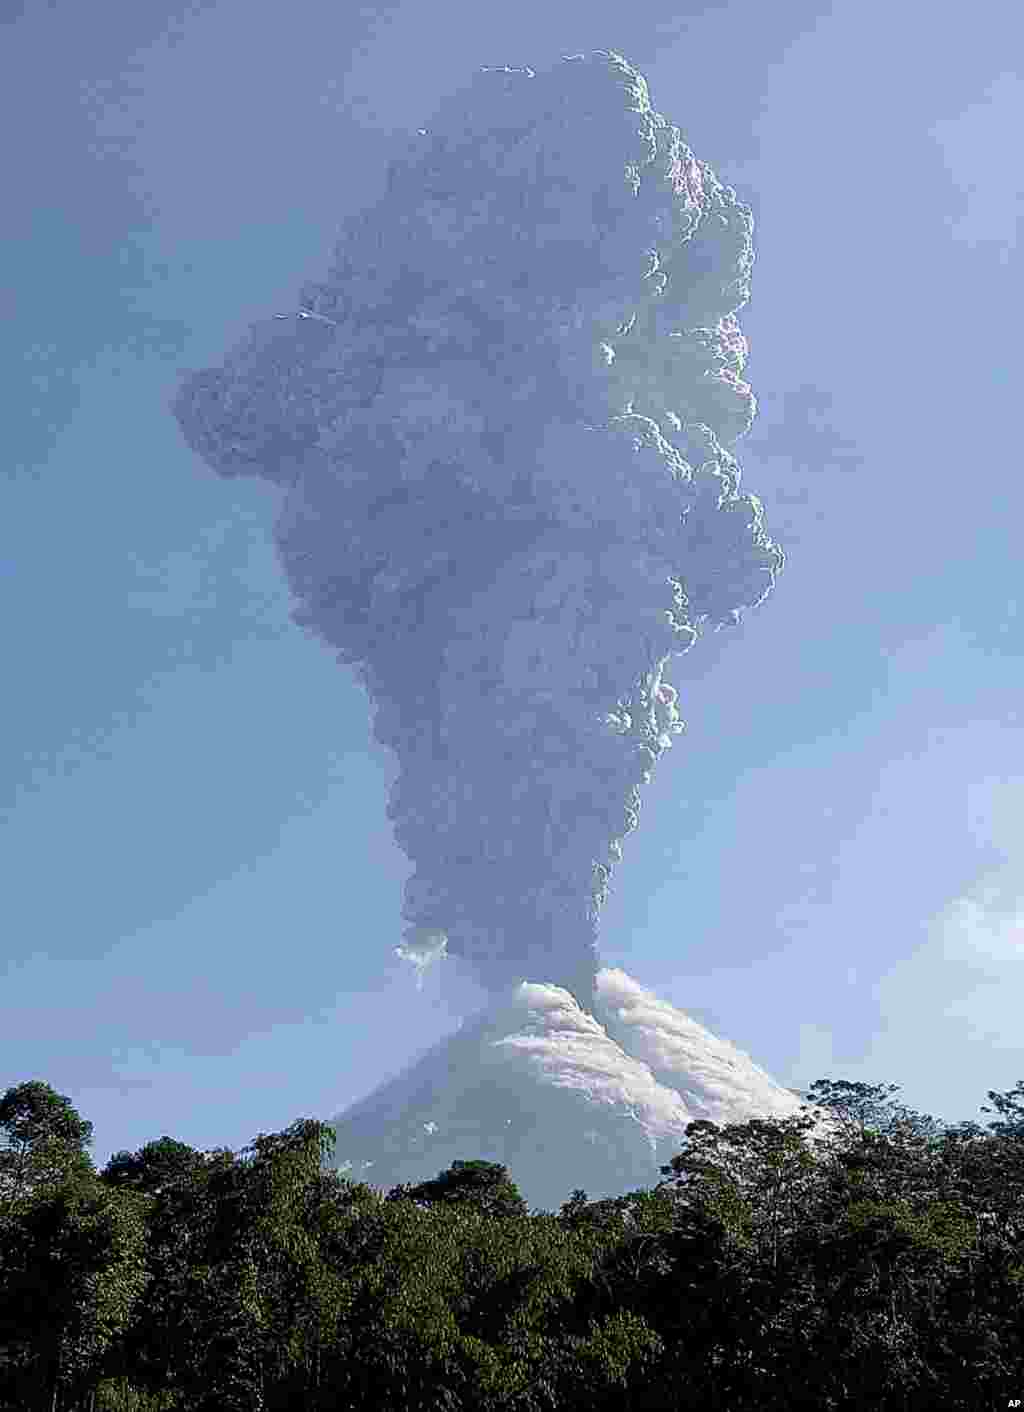 인도네시아 자바섬의 욕야카르타 인근에 있는 므라피 화산이 분화하면서 화산재가 하늘로 치솟고 있다.